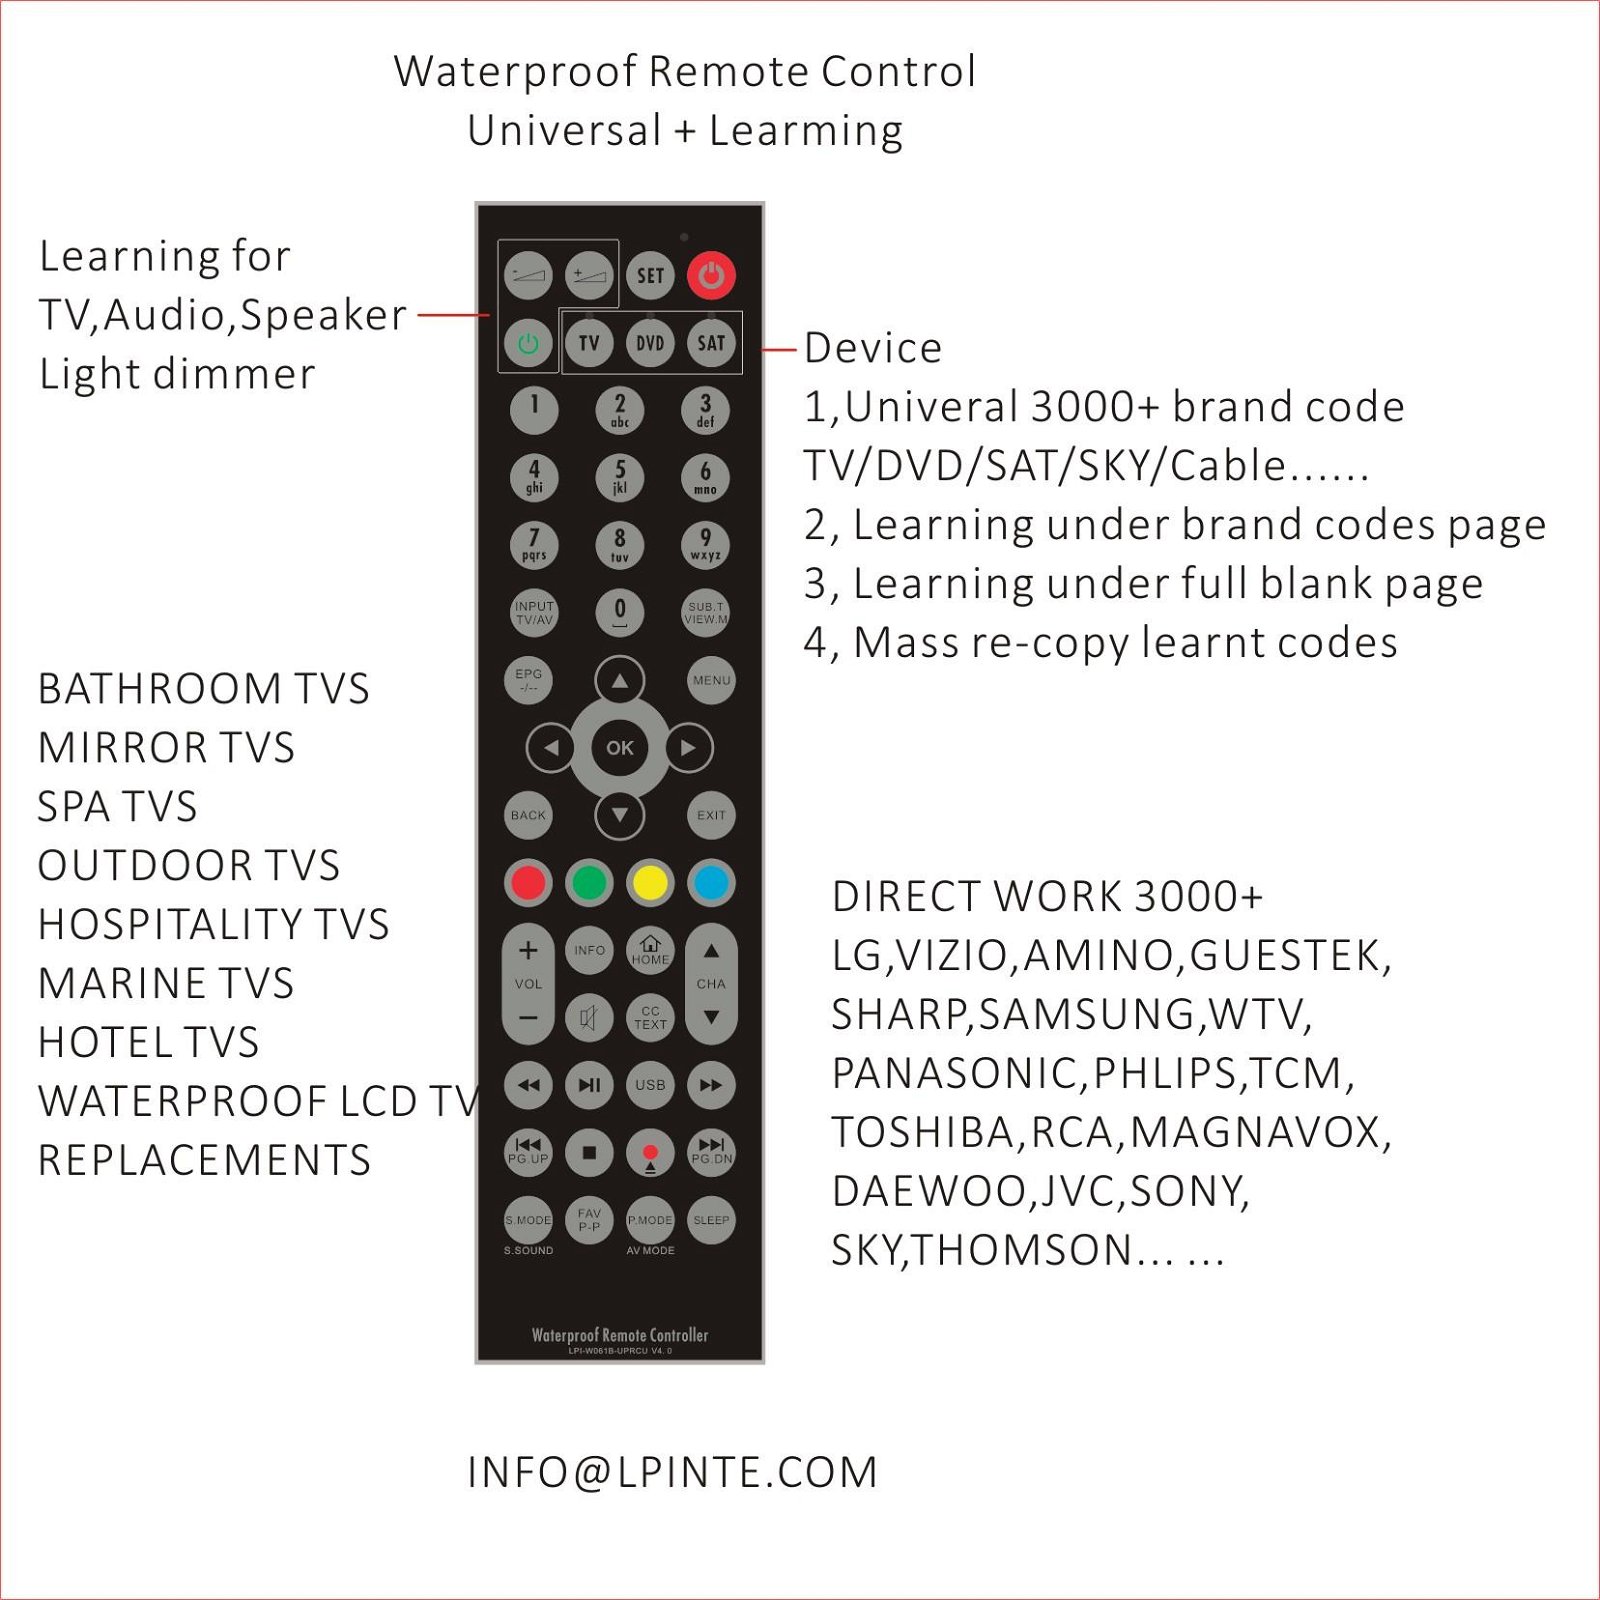 tv remote control